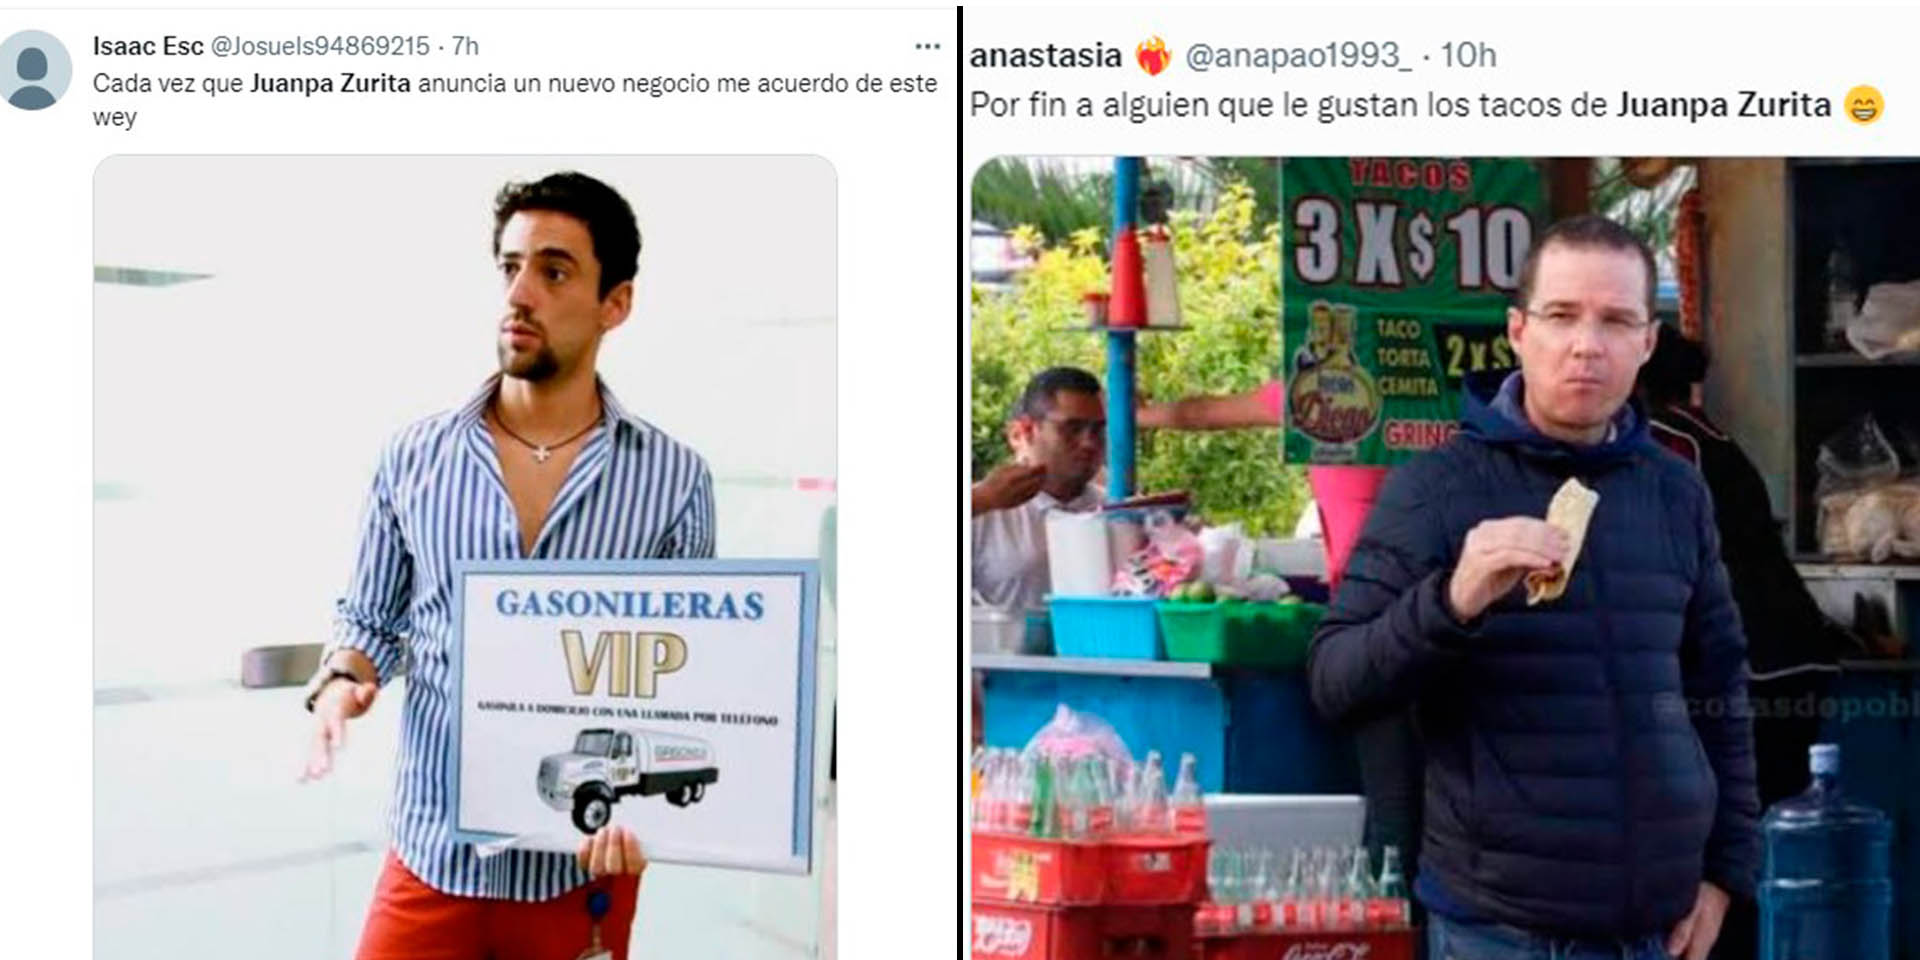 Tiktoker reseñó controversial taquería de Juanpa Zurita | El Imparcial de Oaxaca